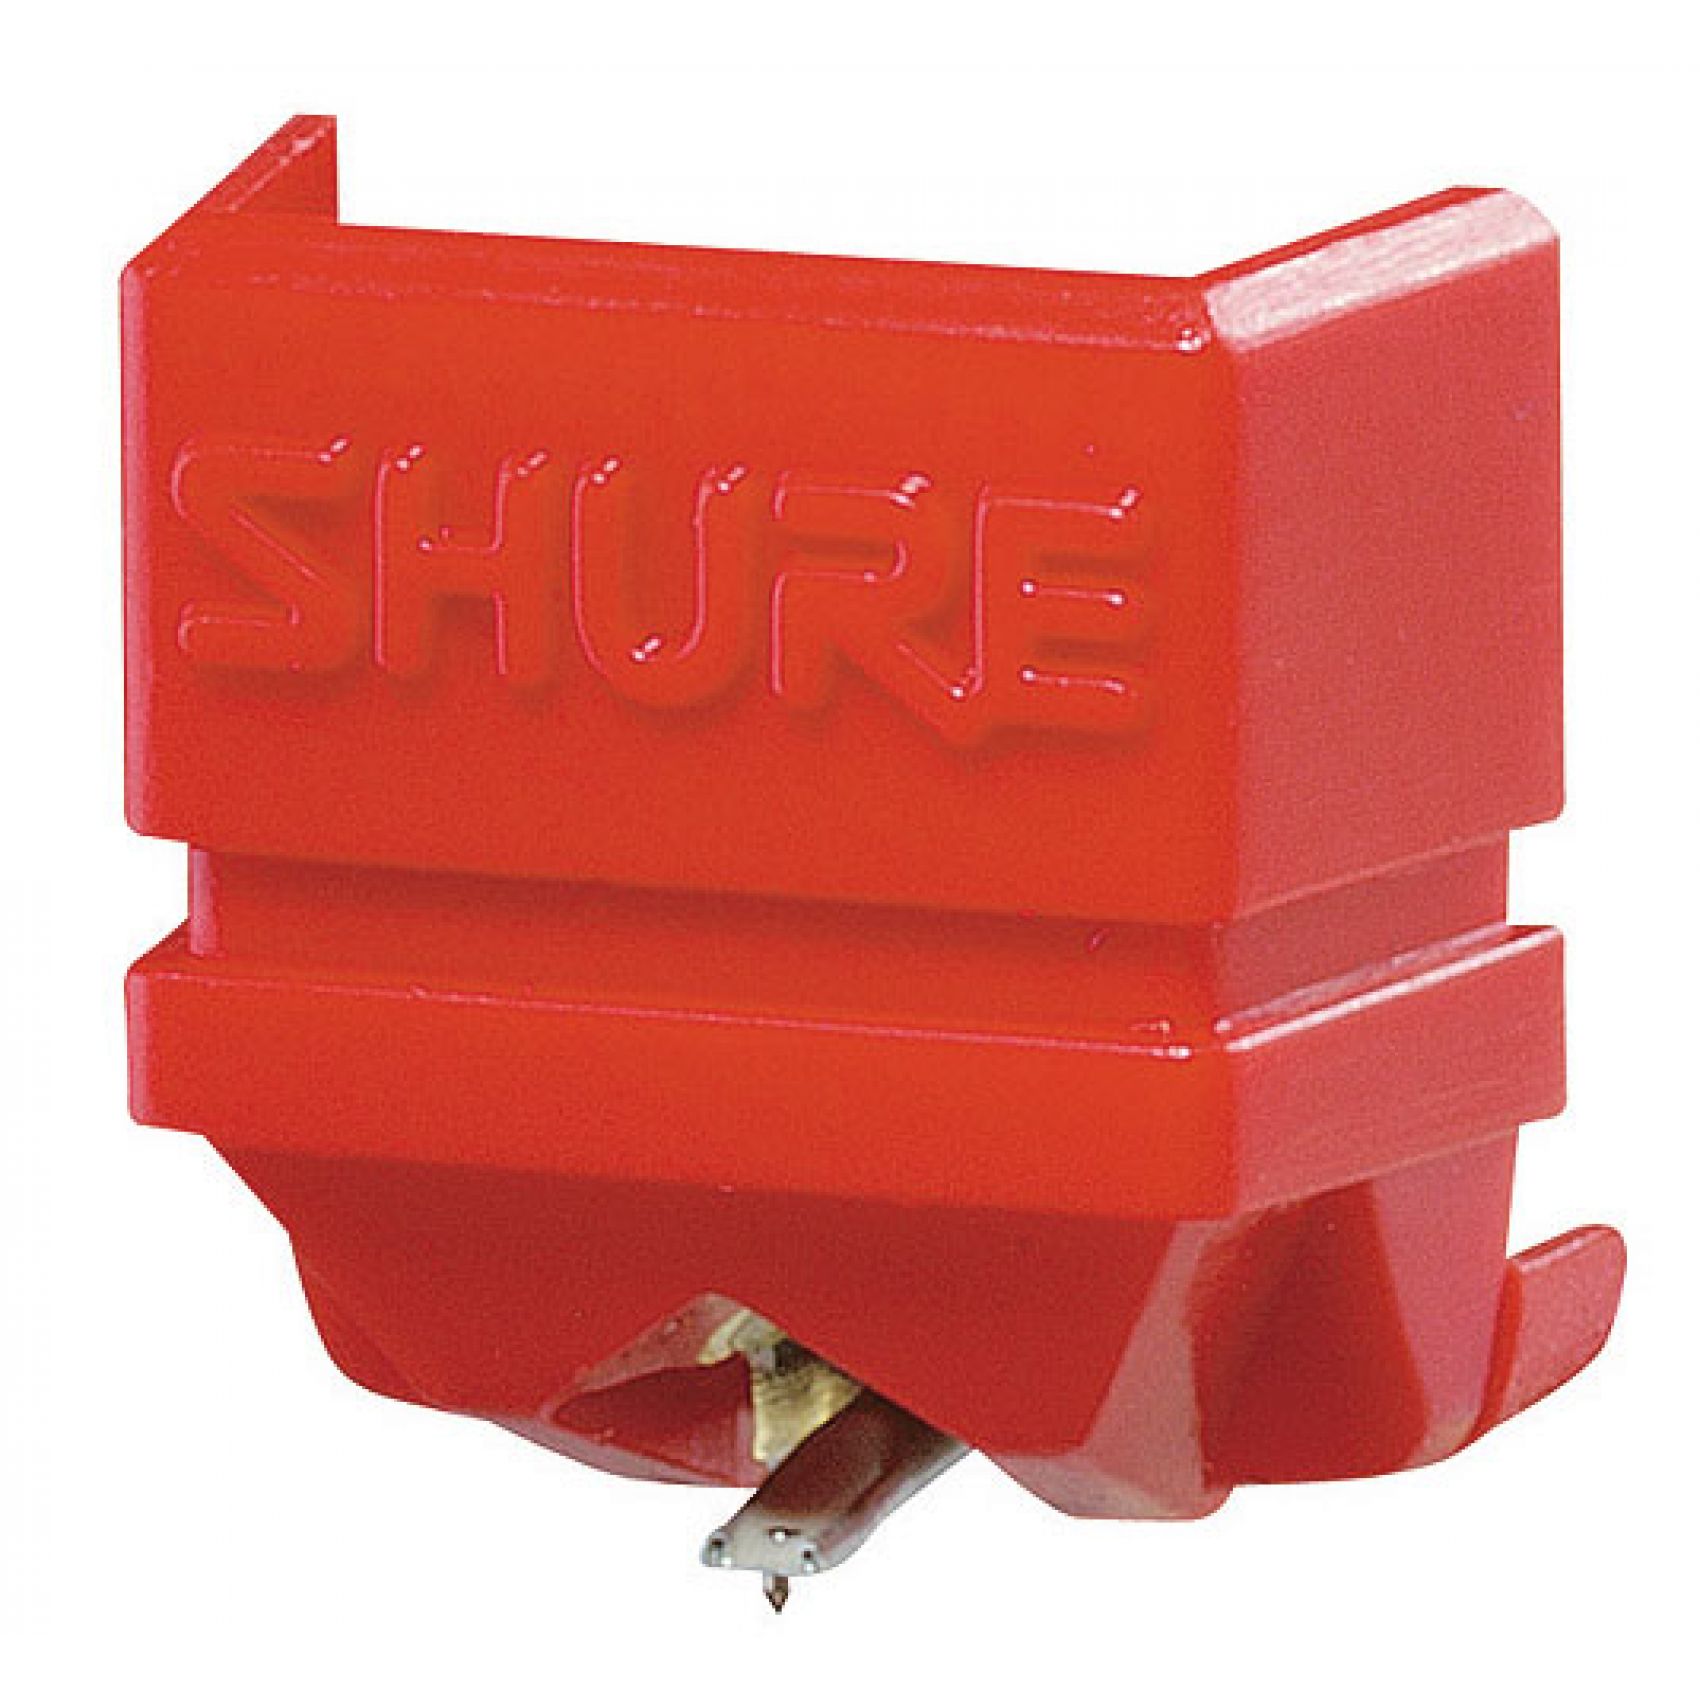 SHURE N92E - STILO PER CARTUCCIA